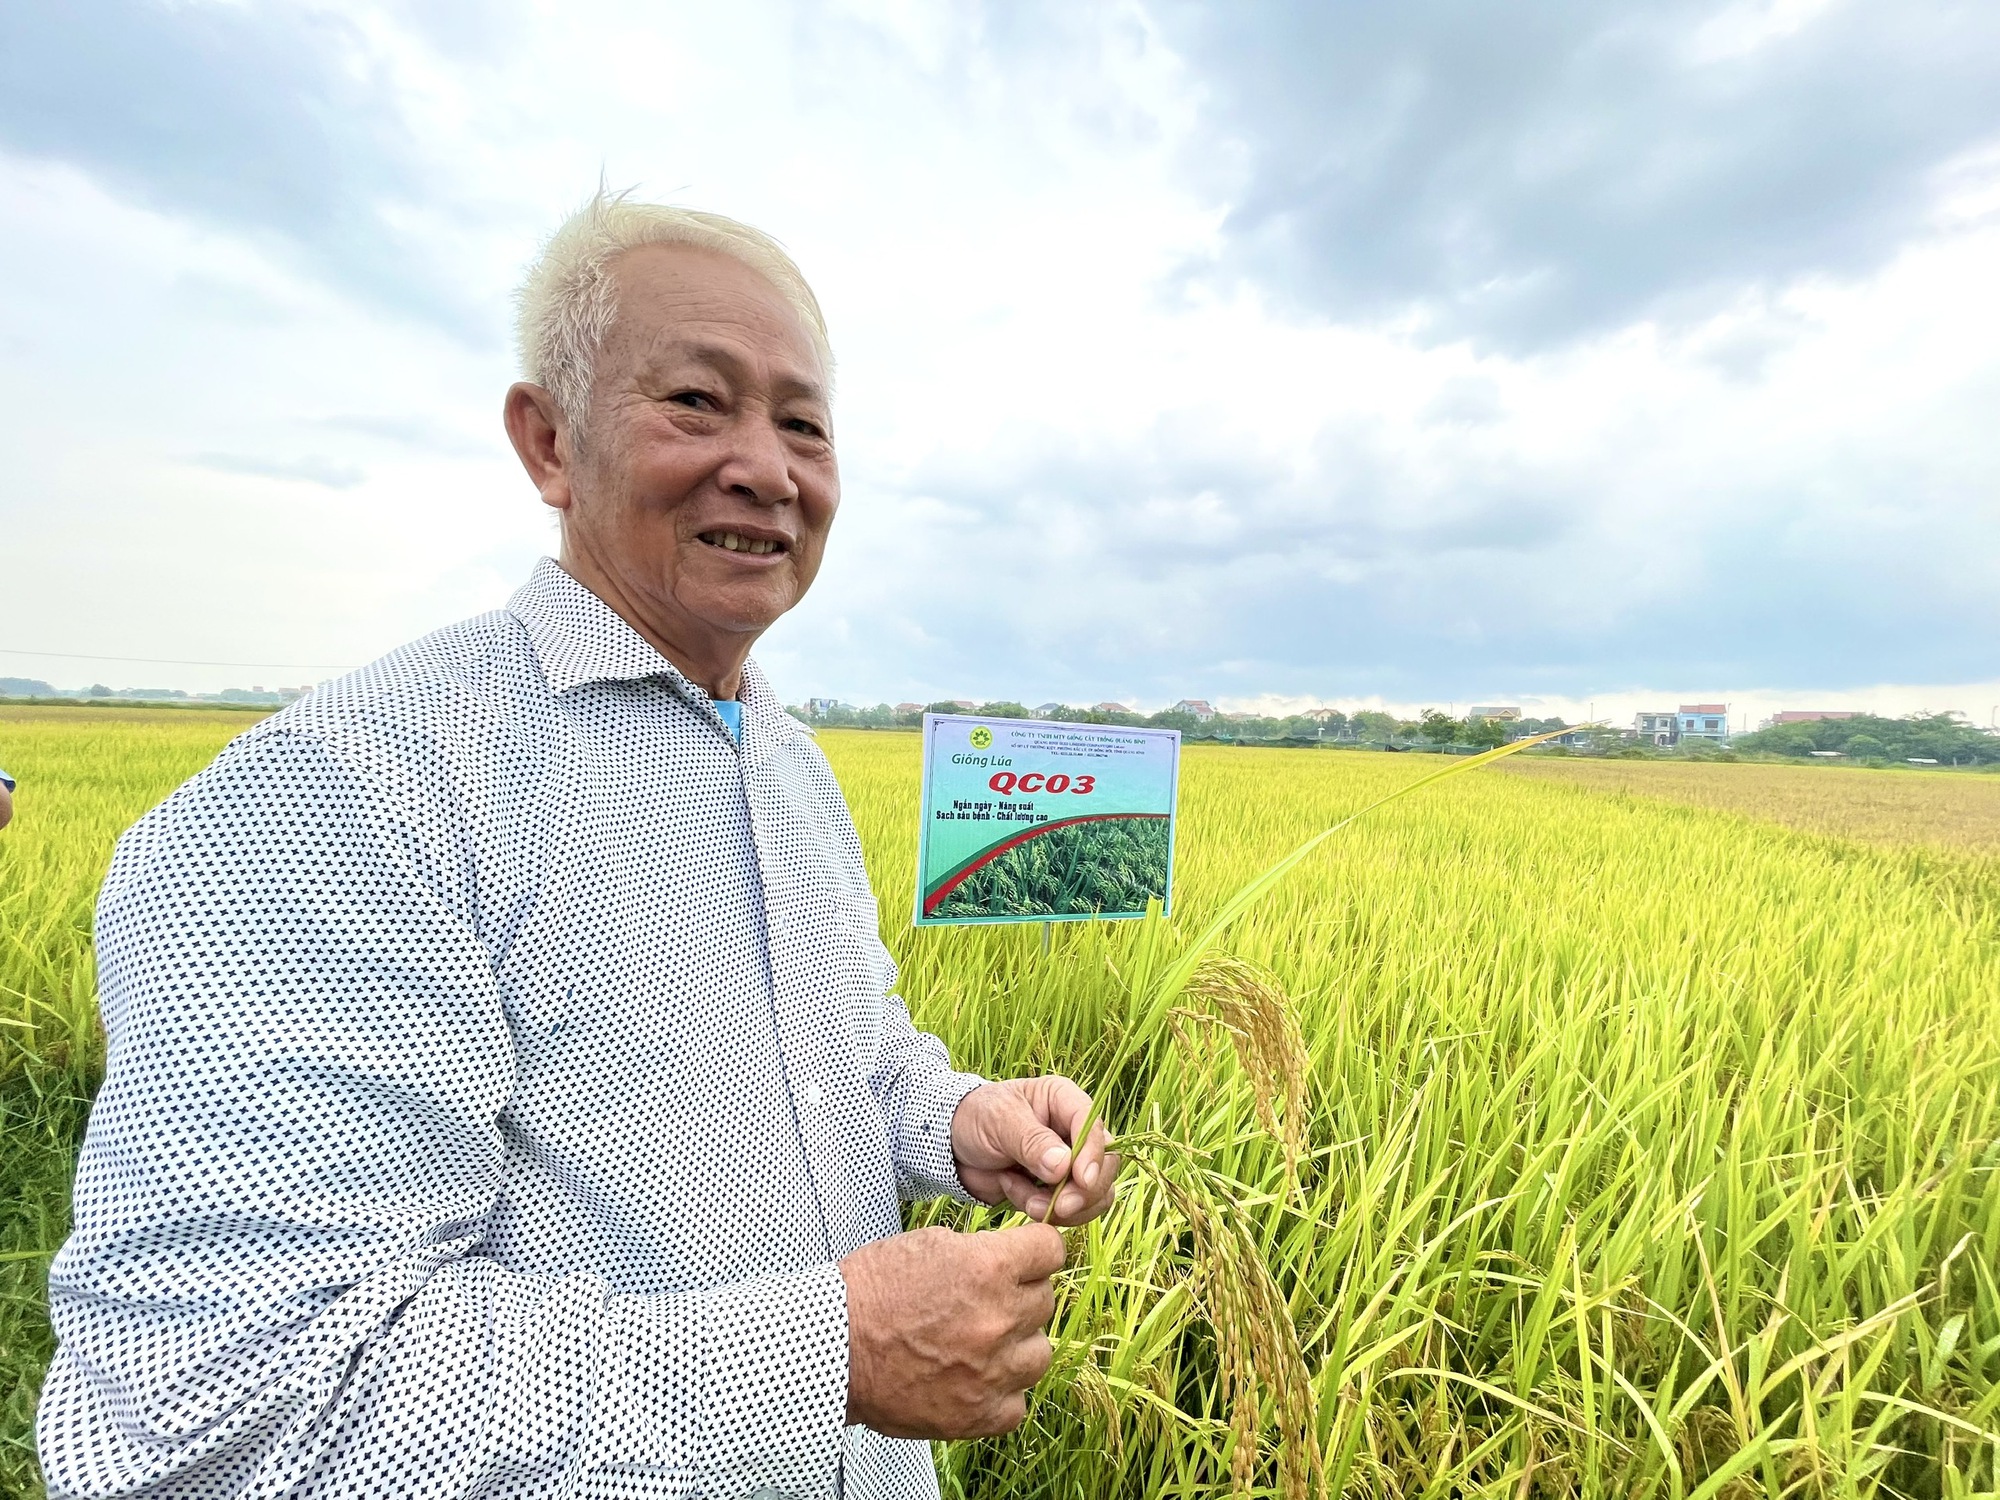 Quảng Bình: Nghỉ lễ, nông dân vẫn ra thăm đồng và đánh giá cao năng suất, chất lượng giống lúa mới này - Ảnh 3.